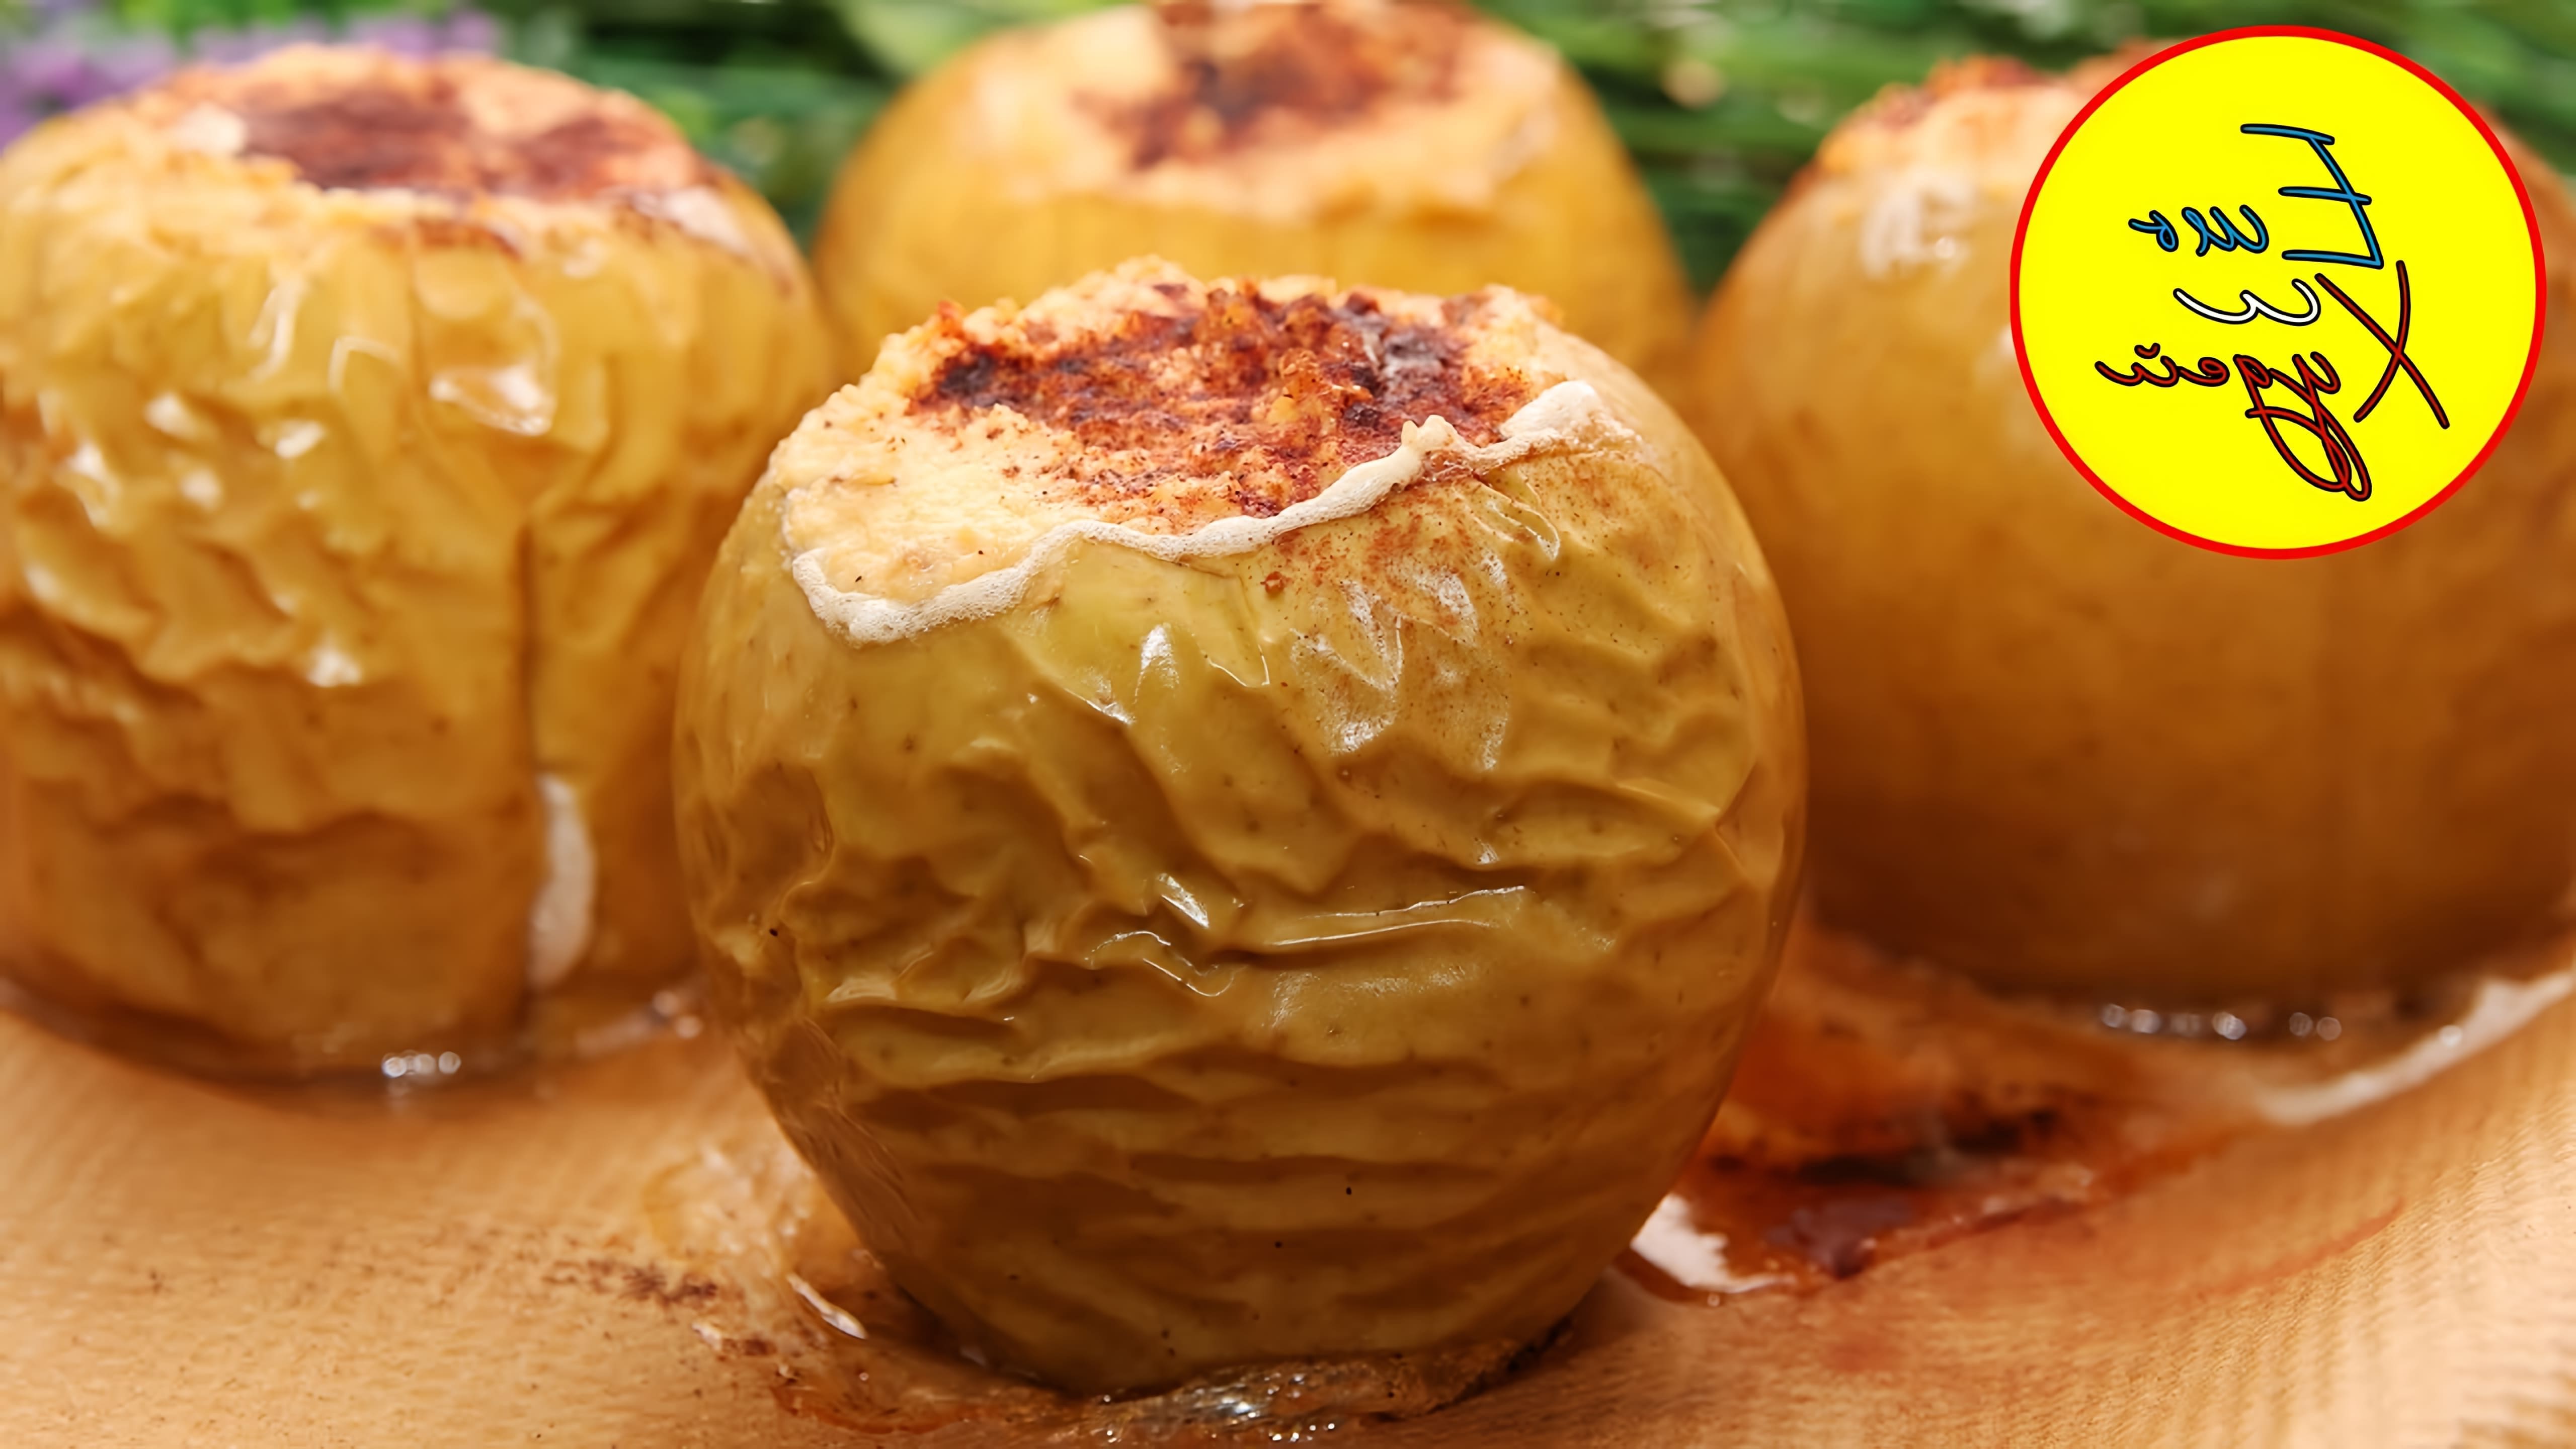 В этом видео демонстрируется рецепт приготовления печеных яблок с творогом, медом и грецкими орехами